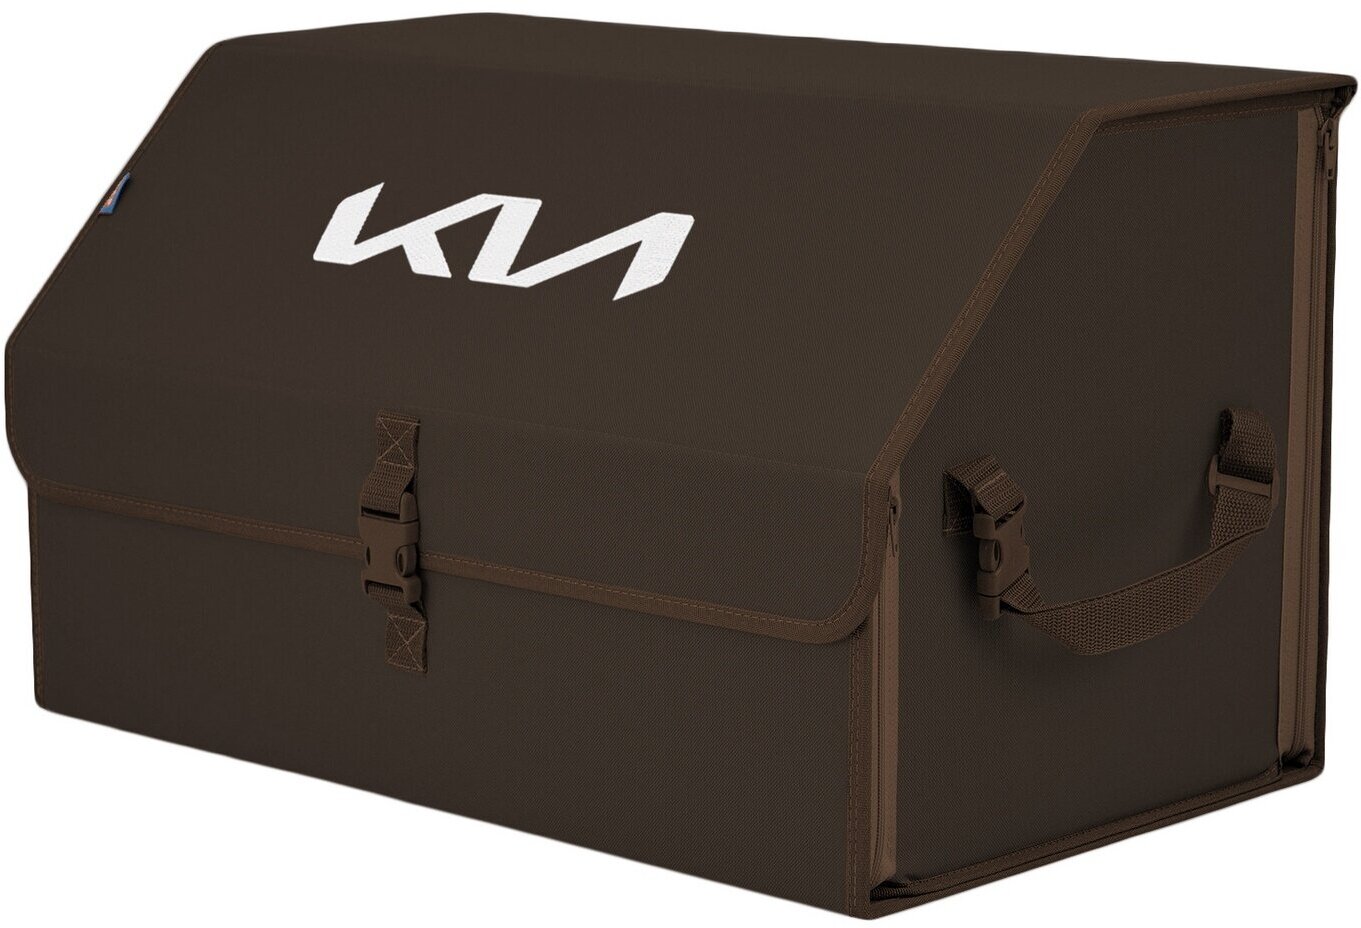 Органайзер-саквояж в багажник "Союз" (размер XL). Цвет: коричневый с вышивкой KIA (КИА).